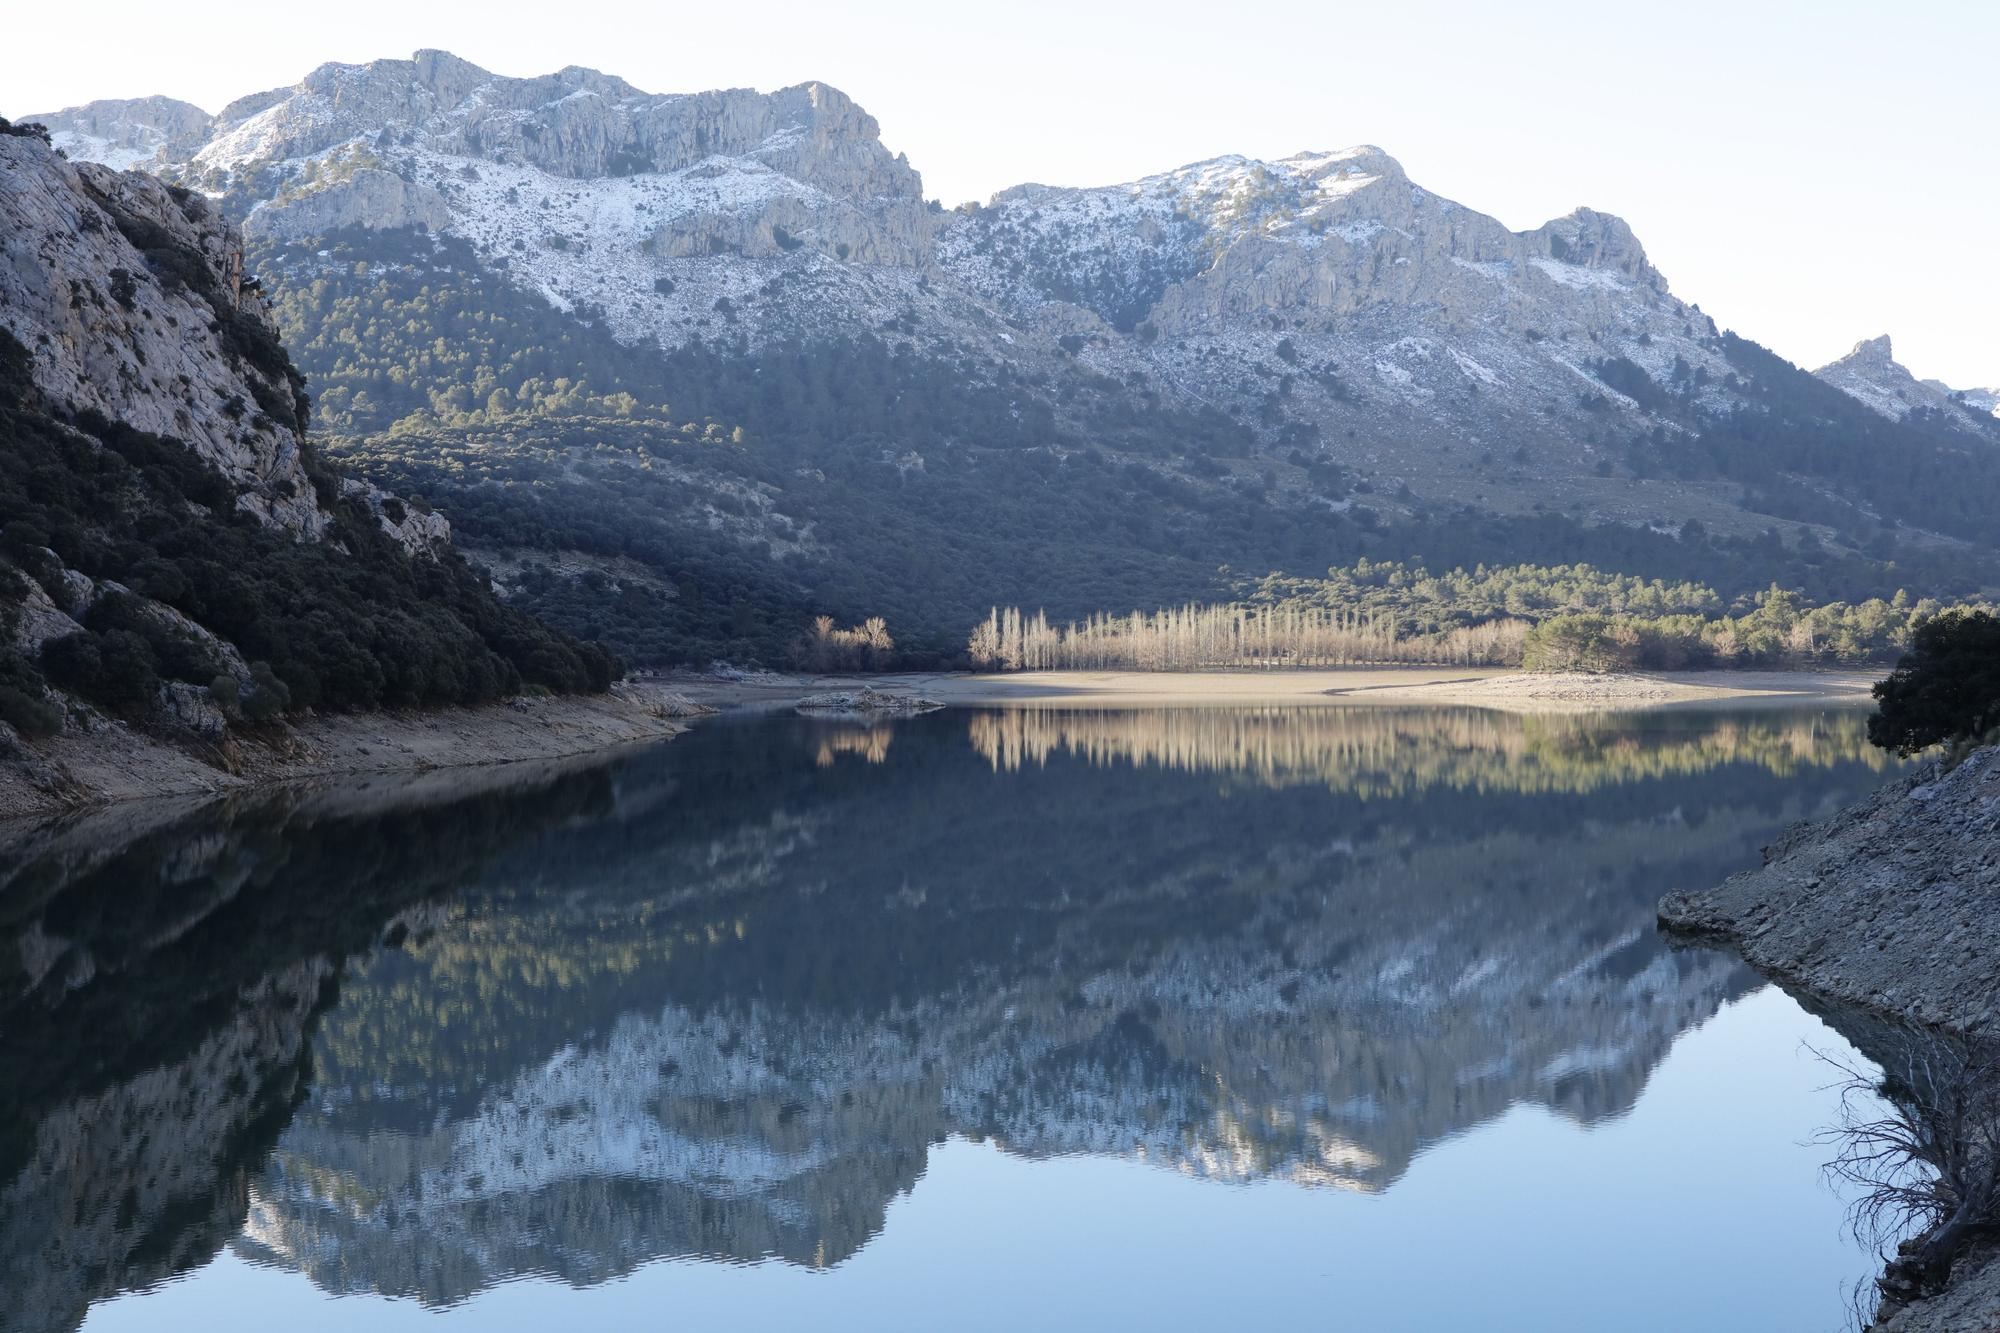 Winter auf Mallorca - die traumhafte Landschaft am Stausee Gorg Blau